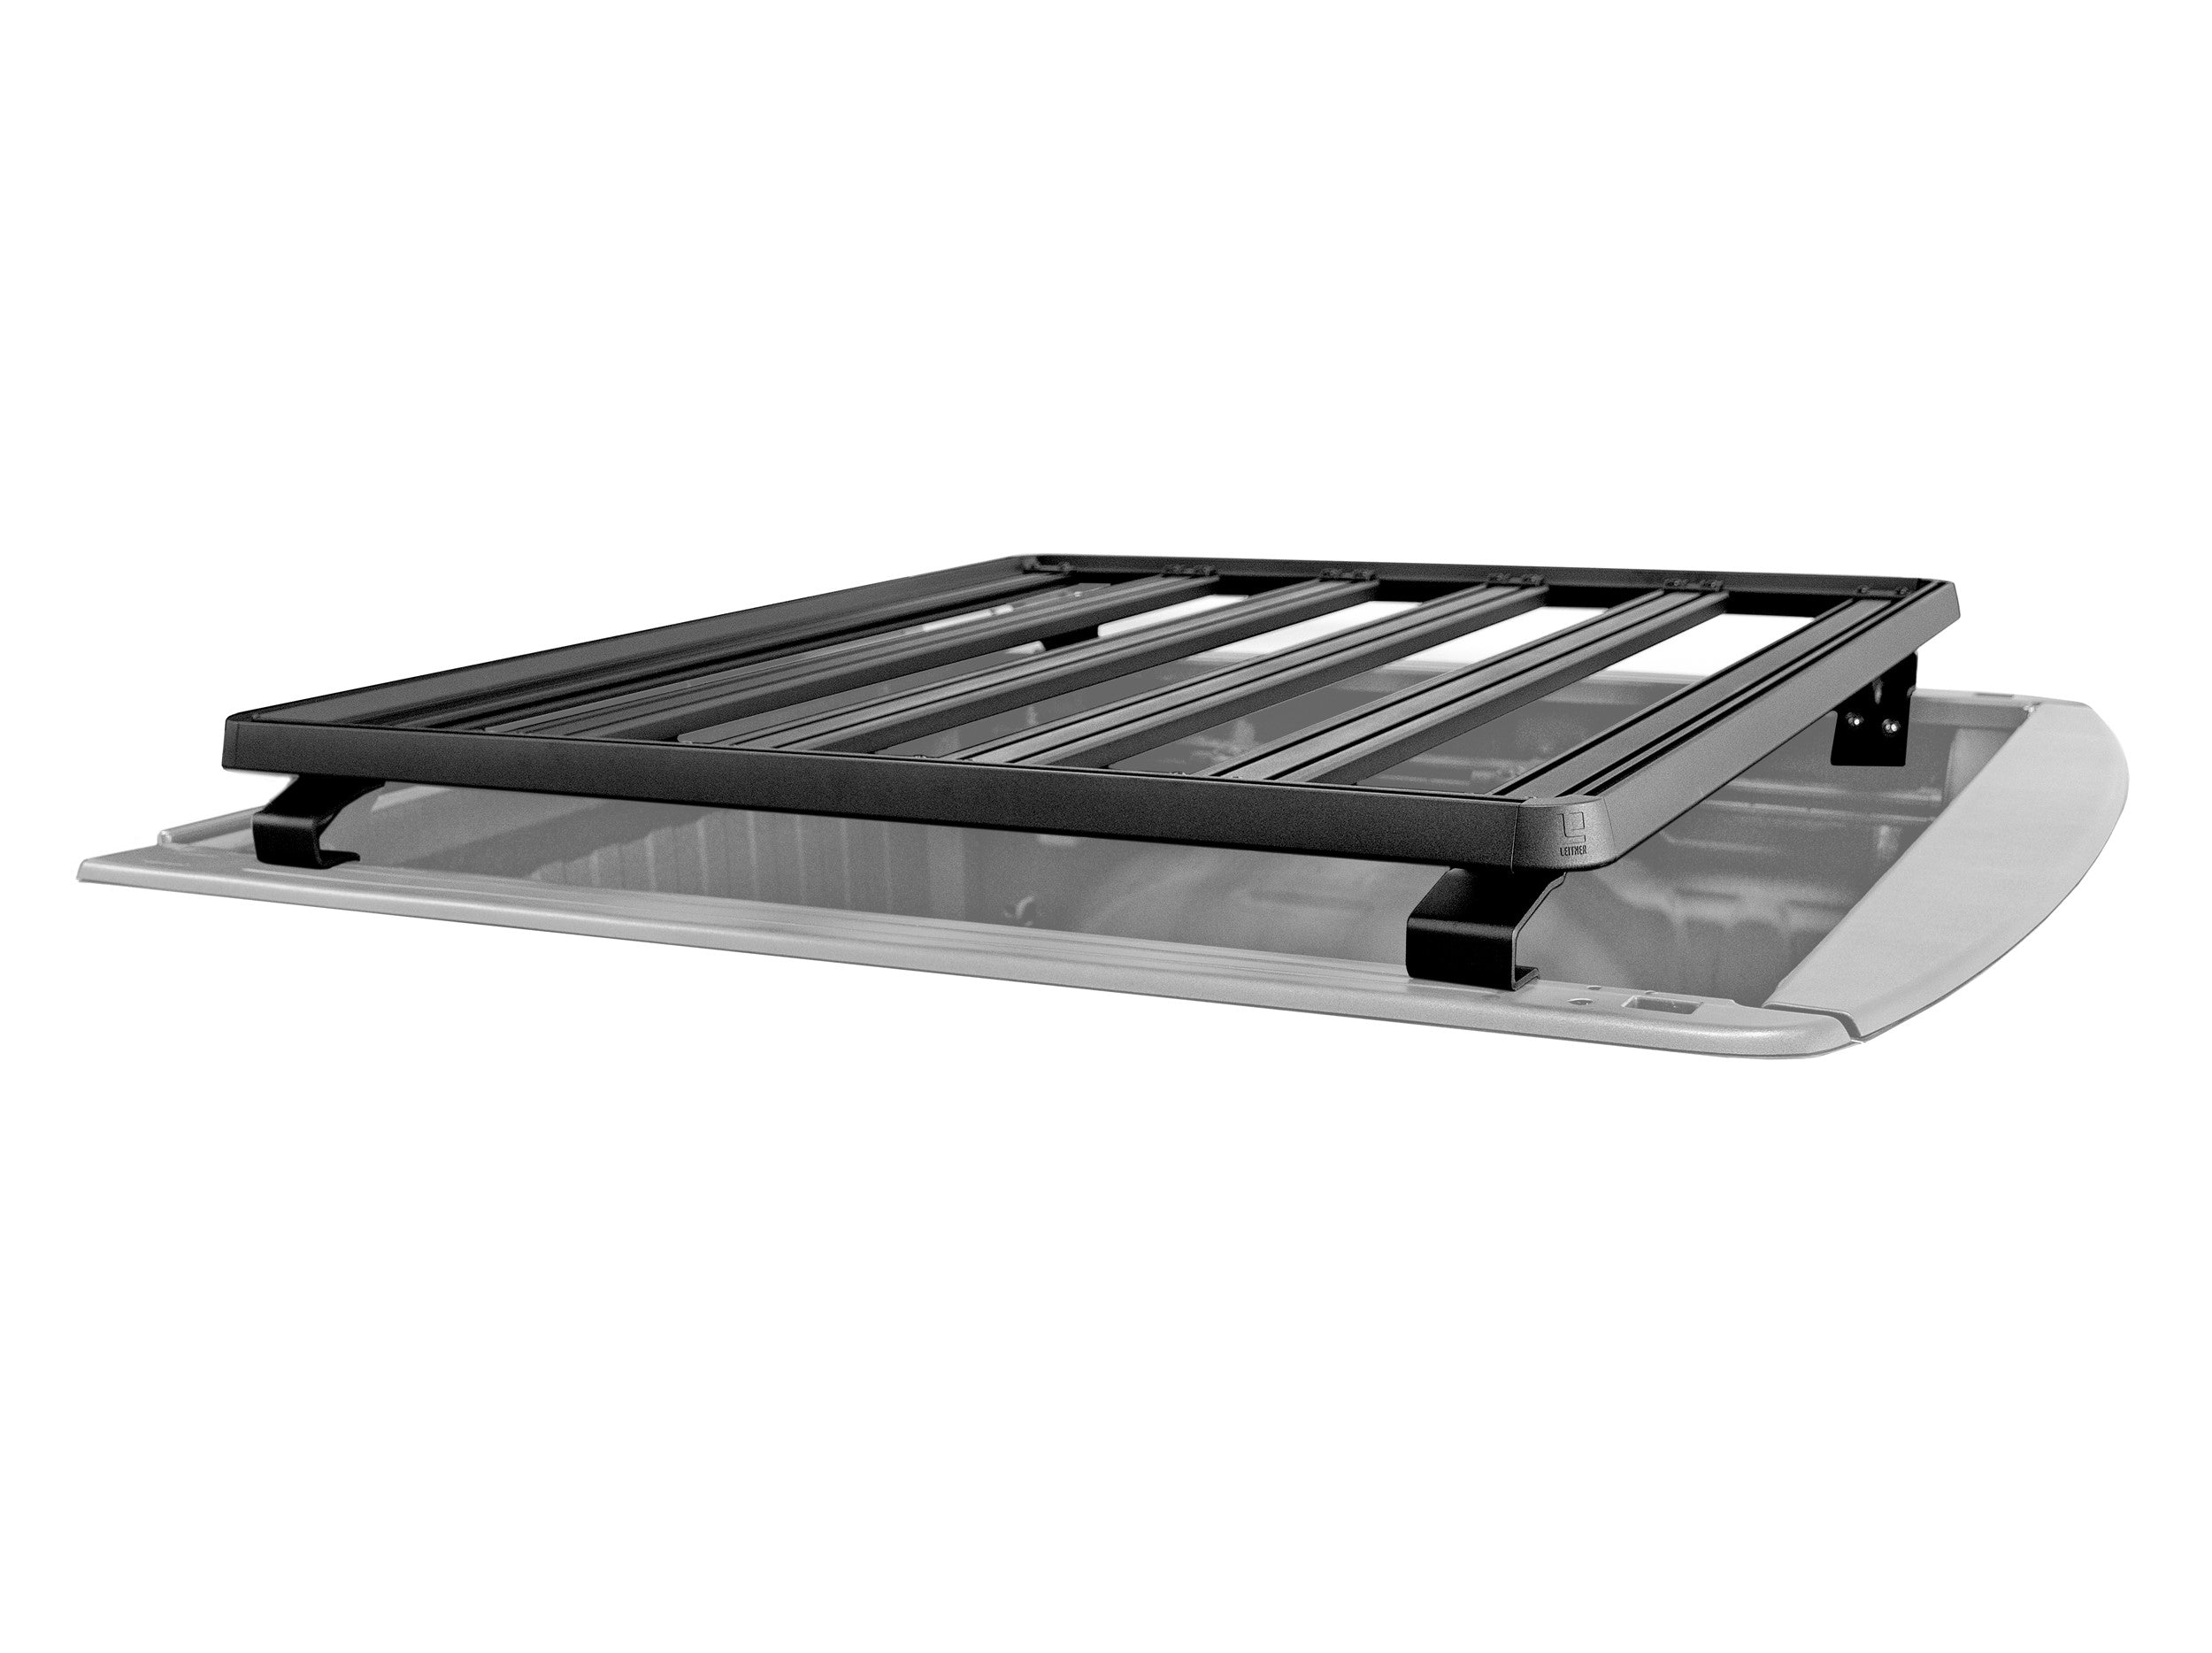 Leitner Designs ACS ROOF | Universal Platform Bed Rack | Fullsize Trucks Bed Racks - Modula Racks